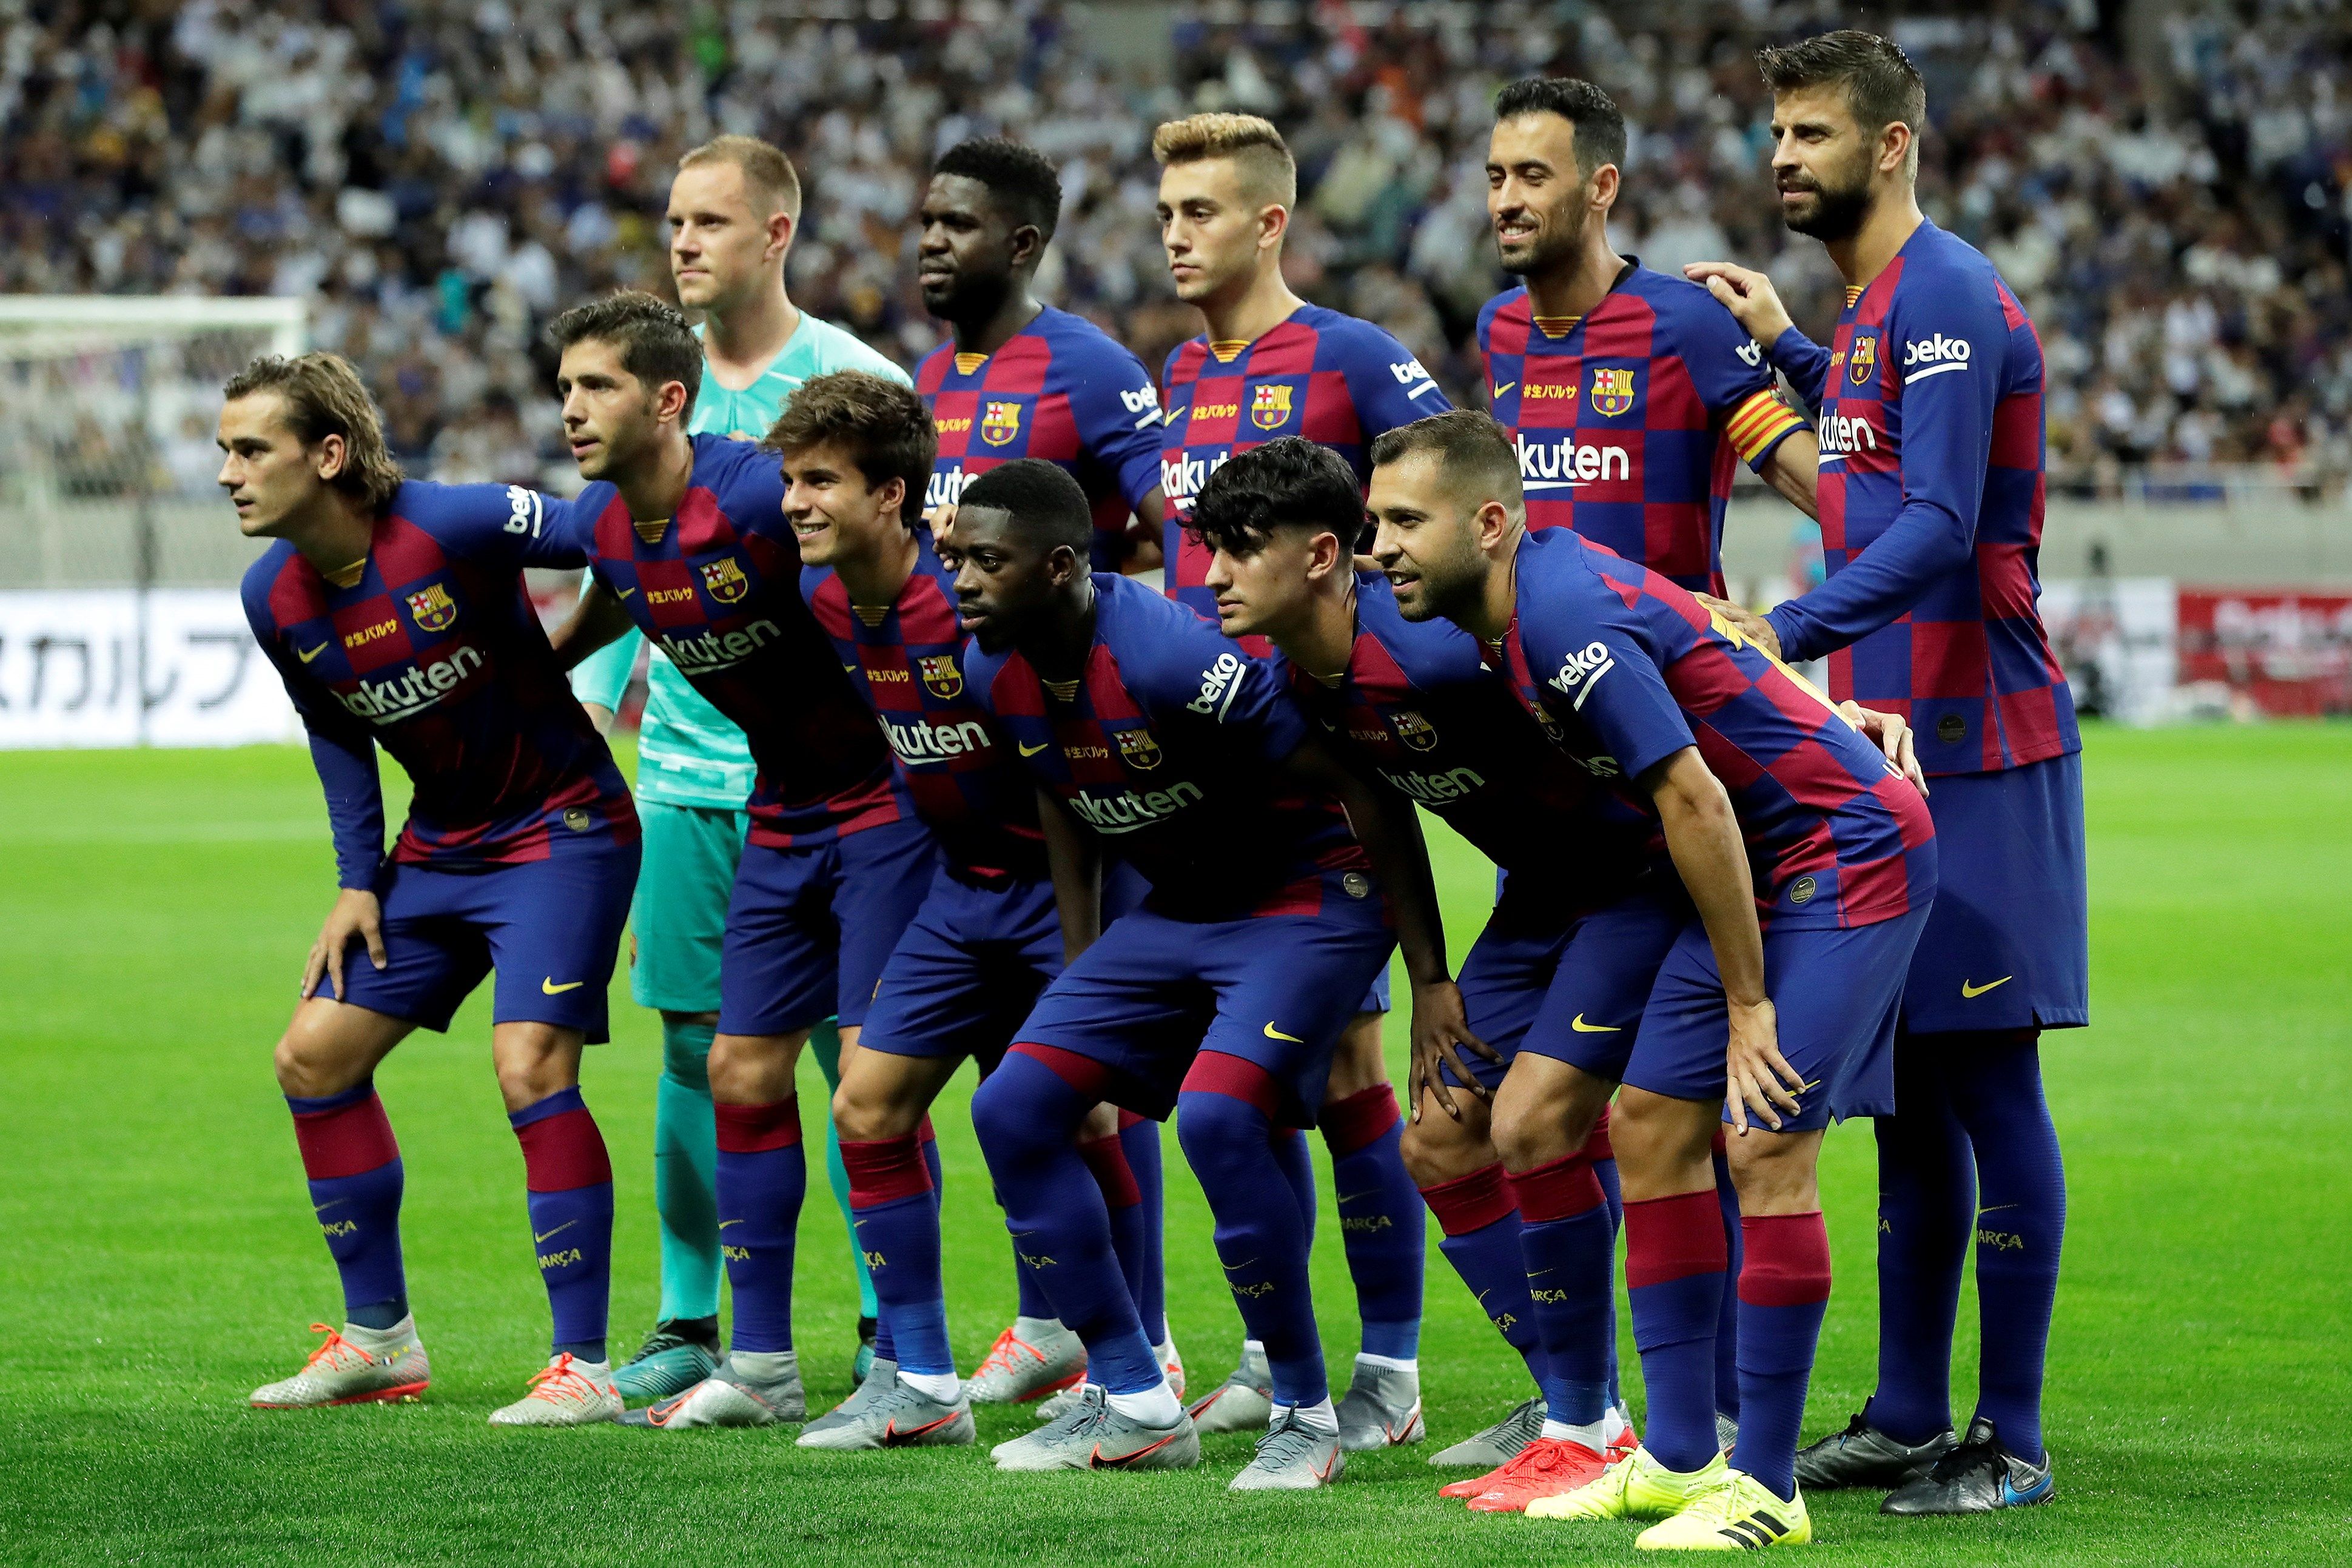 El equipo del Barcelona espera alcanzar los €1 mil millones en su próximo ejercicio fiscal. (Foto Prensa Libre: EFE)